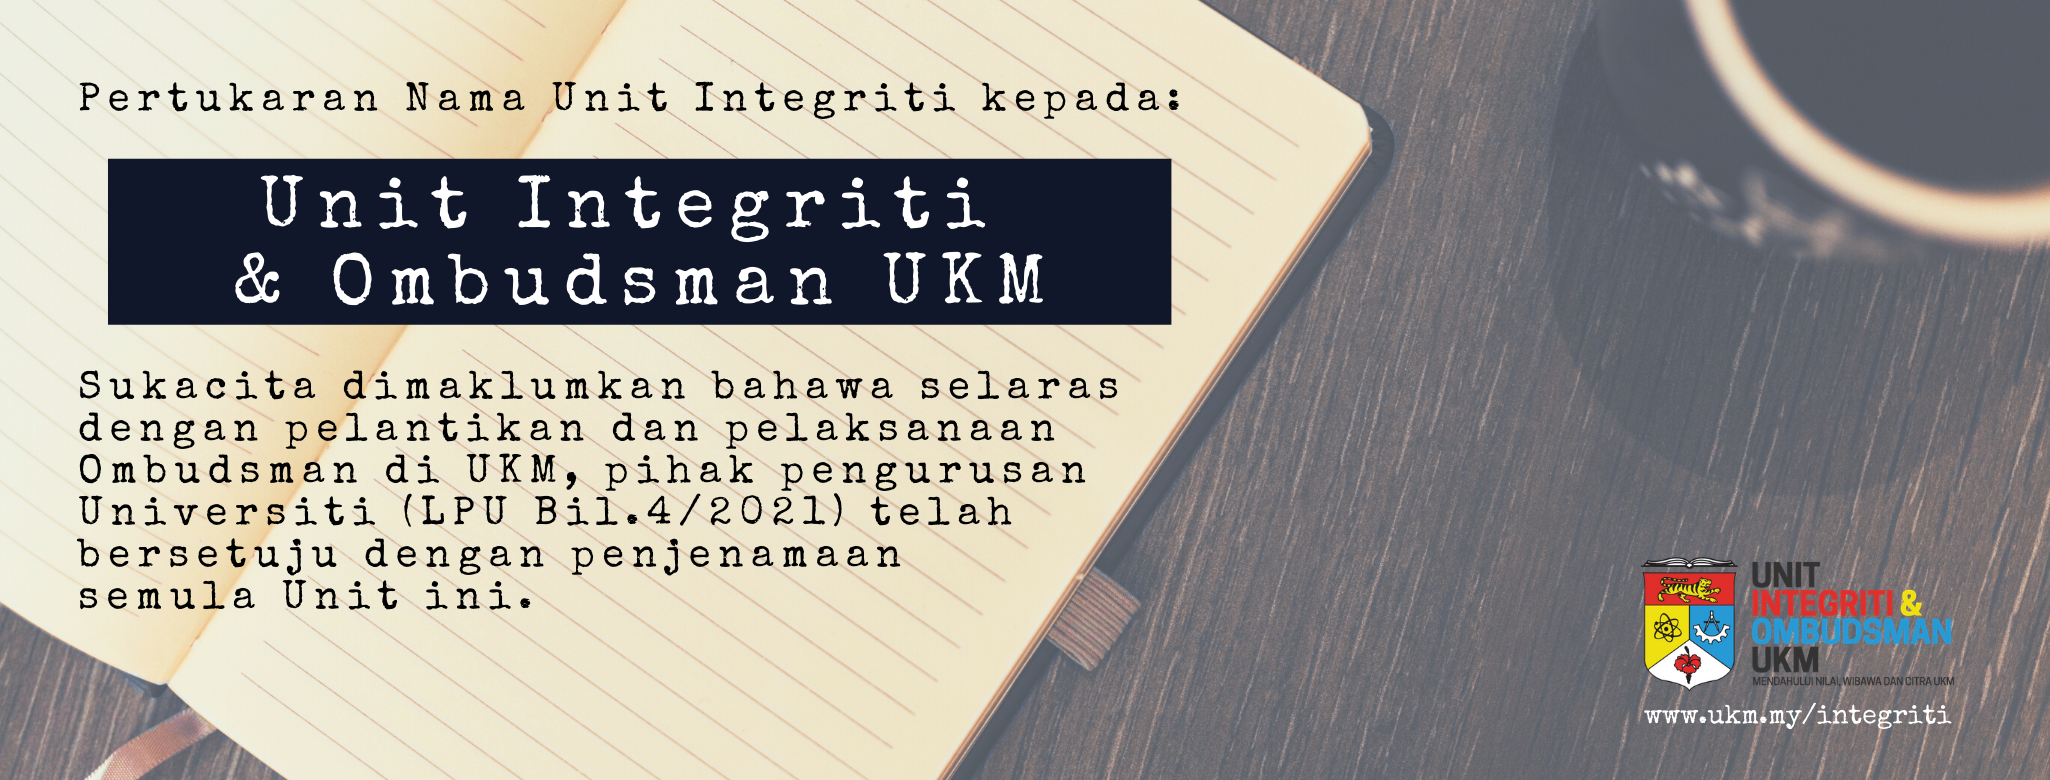 Pemakluman – Pertukaran Nama Unit Integriti kepada Unit Integriti & Ombudsman UKM